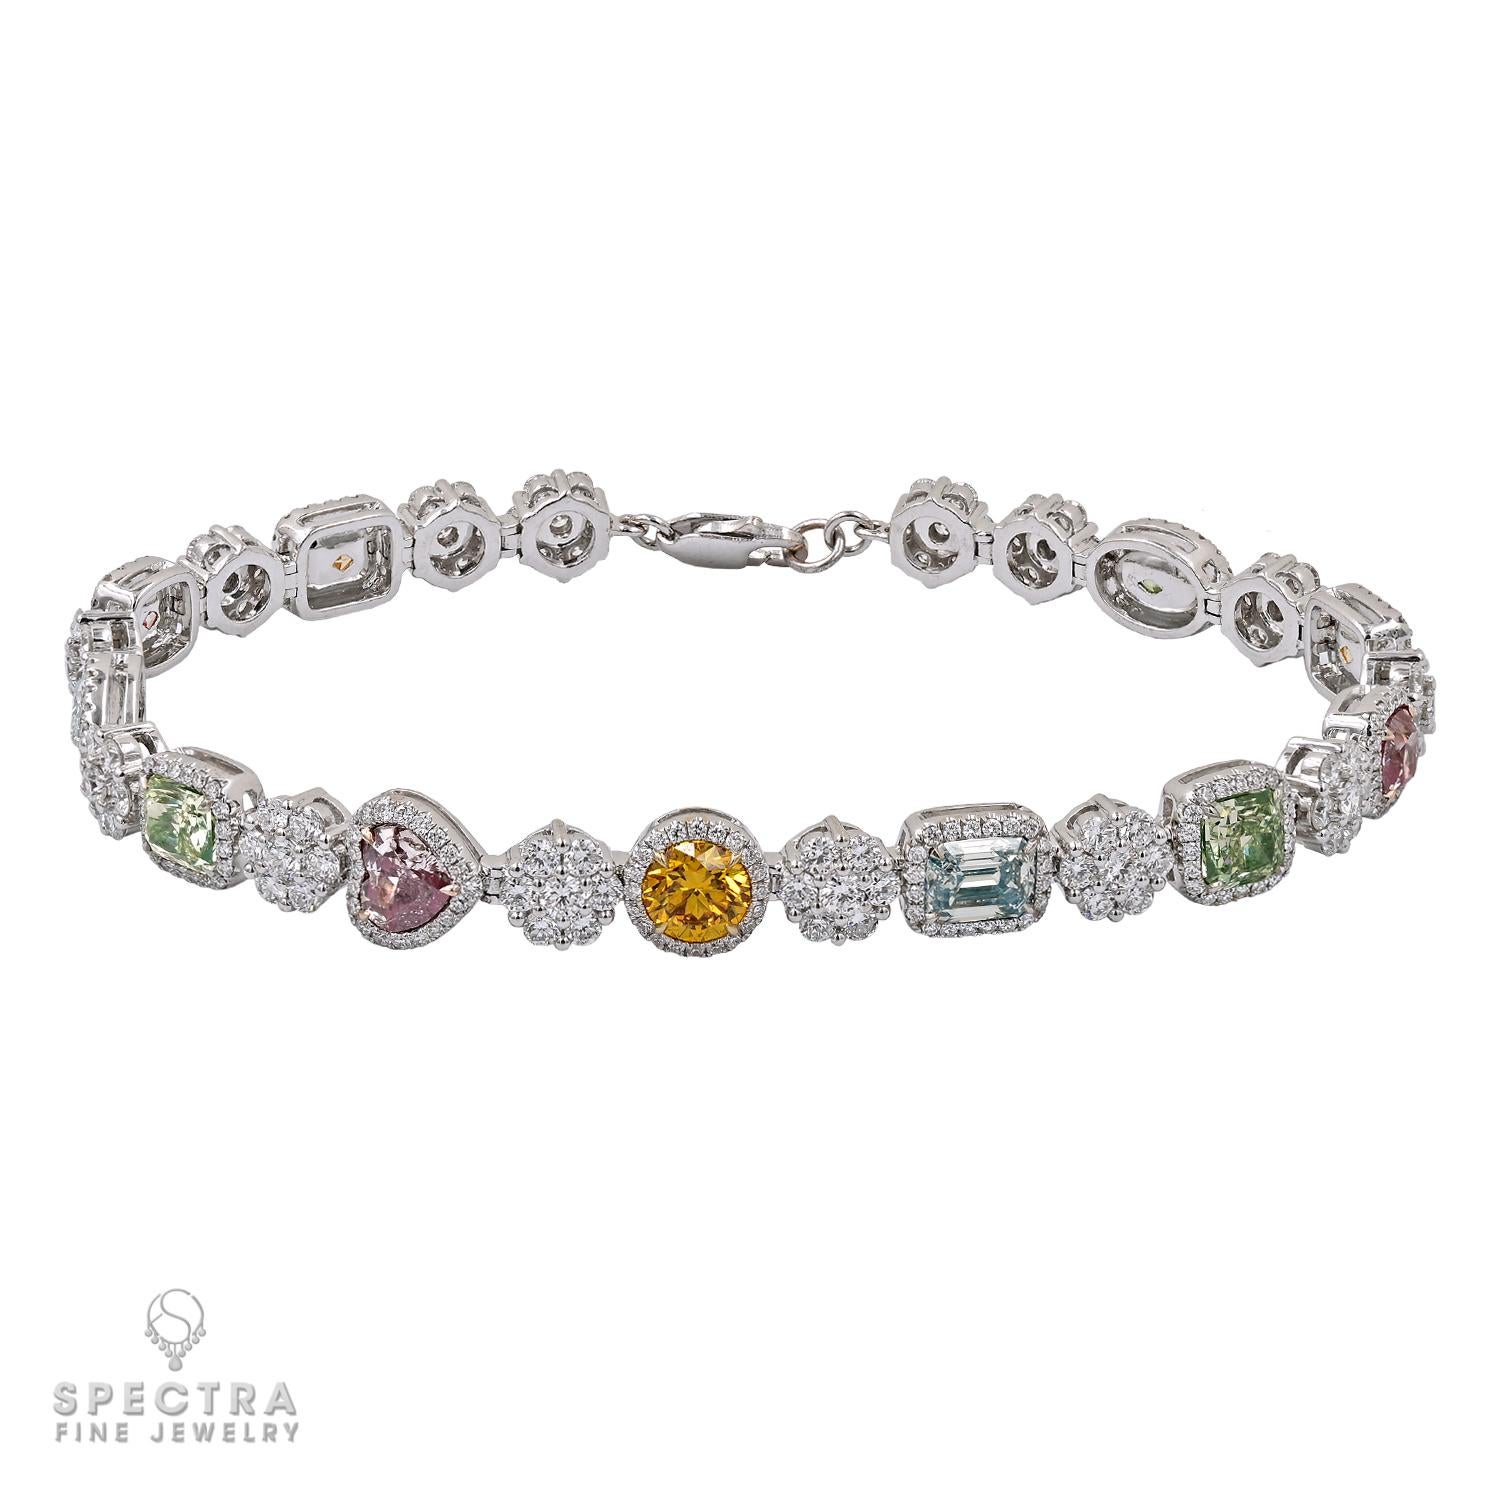 Dieses reizende Armband ist mit einer atemberaubenden Reihe von Edelsteinen geschmückt, darunter 11 kunstvoll angeordnete farbige Diamanten in Mischform, die zusammen 5,85 Karat wiegen. Jeder Diamant wurde sorgfältig ausgewählt und zeigt eine